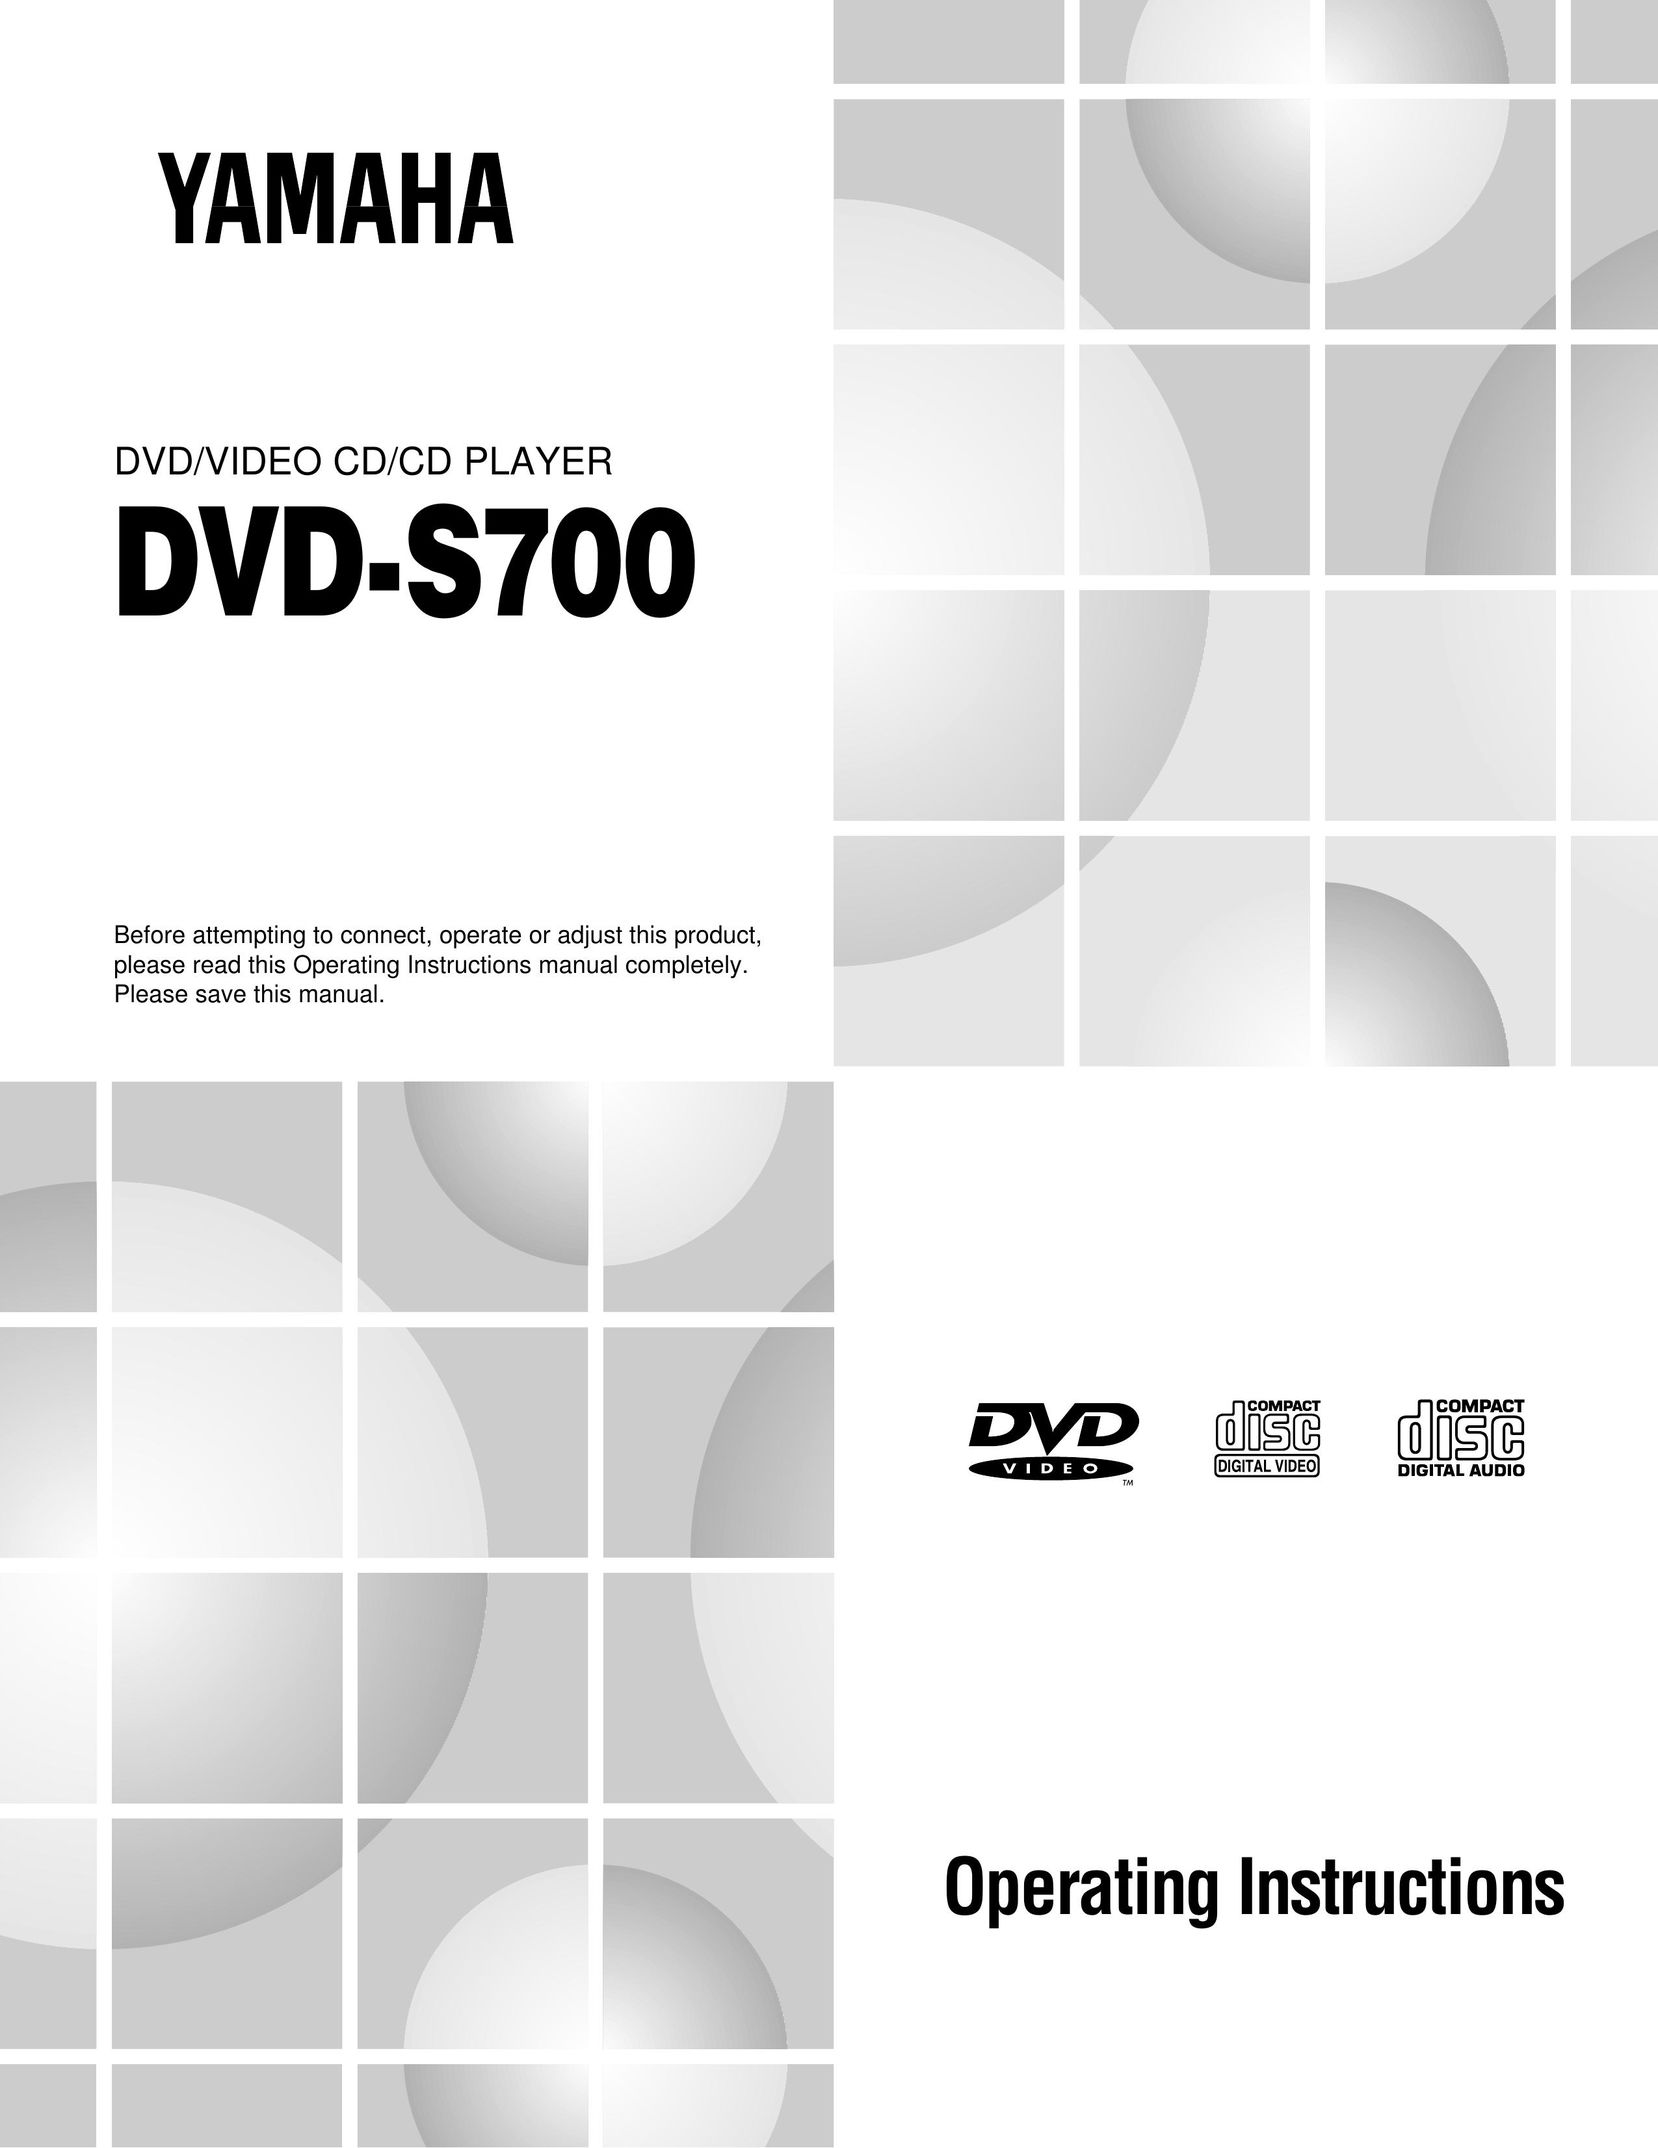 Yamaha DVD-S700 DVD Player User Manual